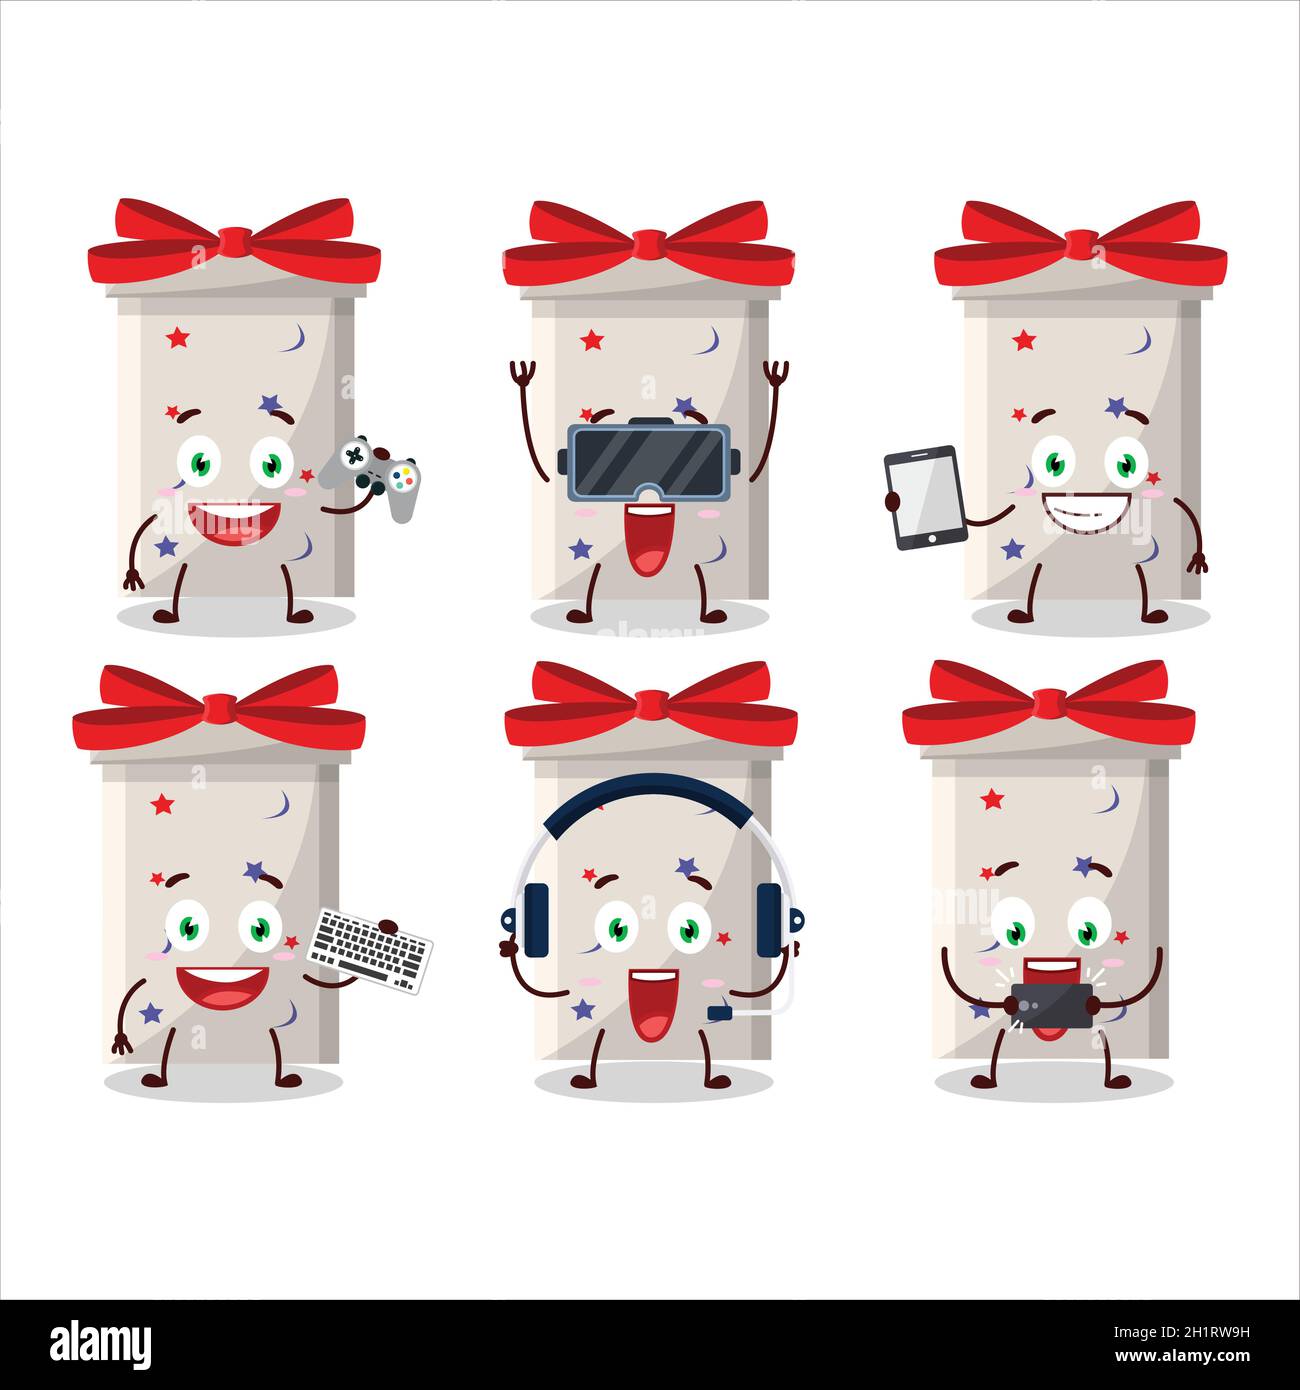 Blanc long cadeau boîte personnage de dessin animé jouent à des jeux avec divers émoticônes mignons.Illustration vectorielle Illustration de Vecteur